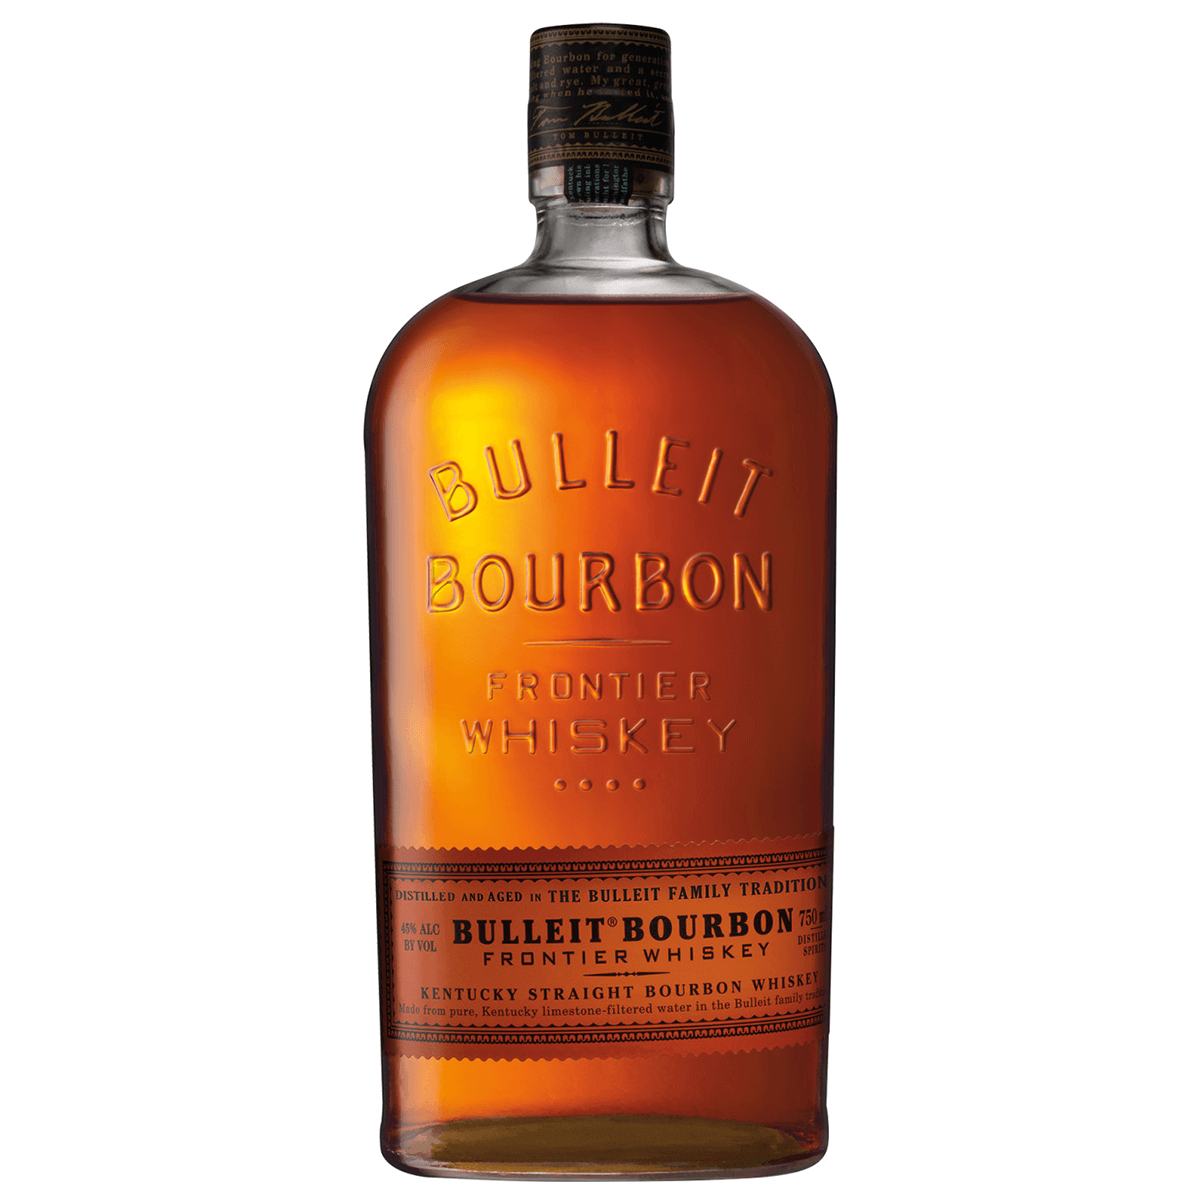 Order Bulleit Bourbon